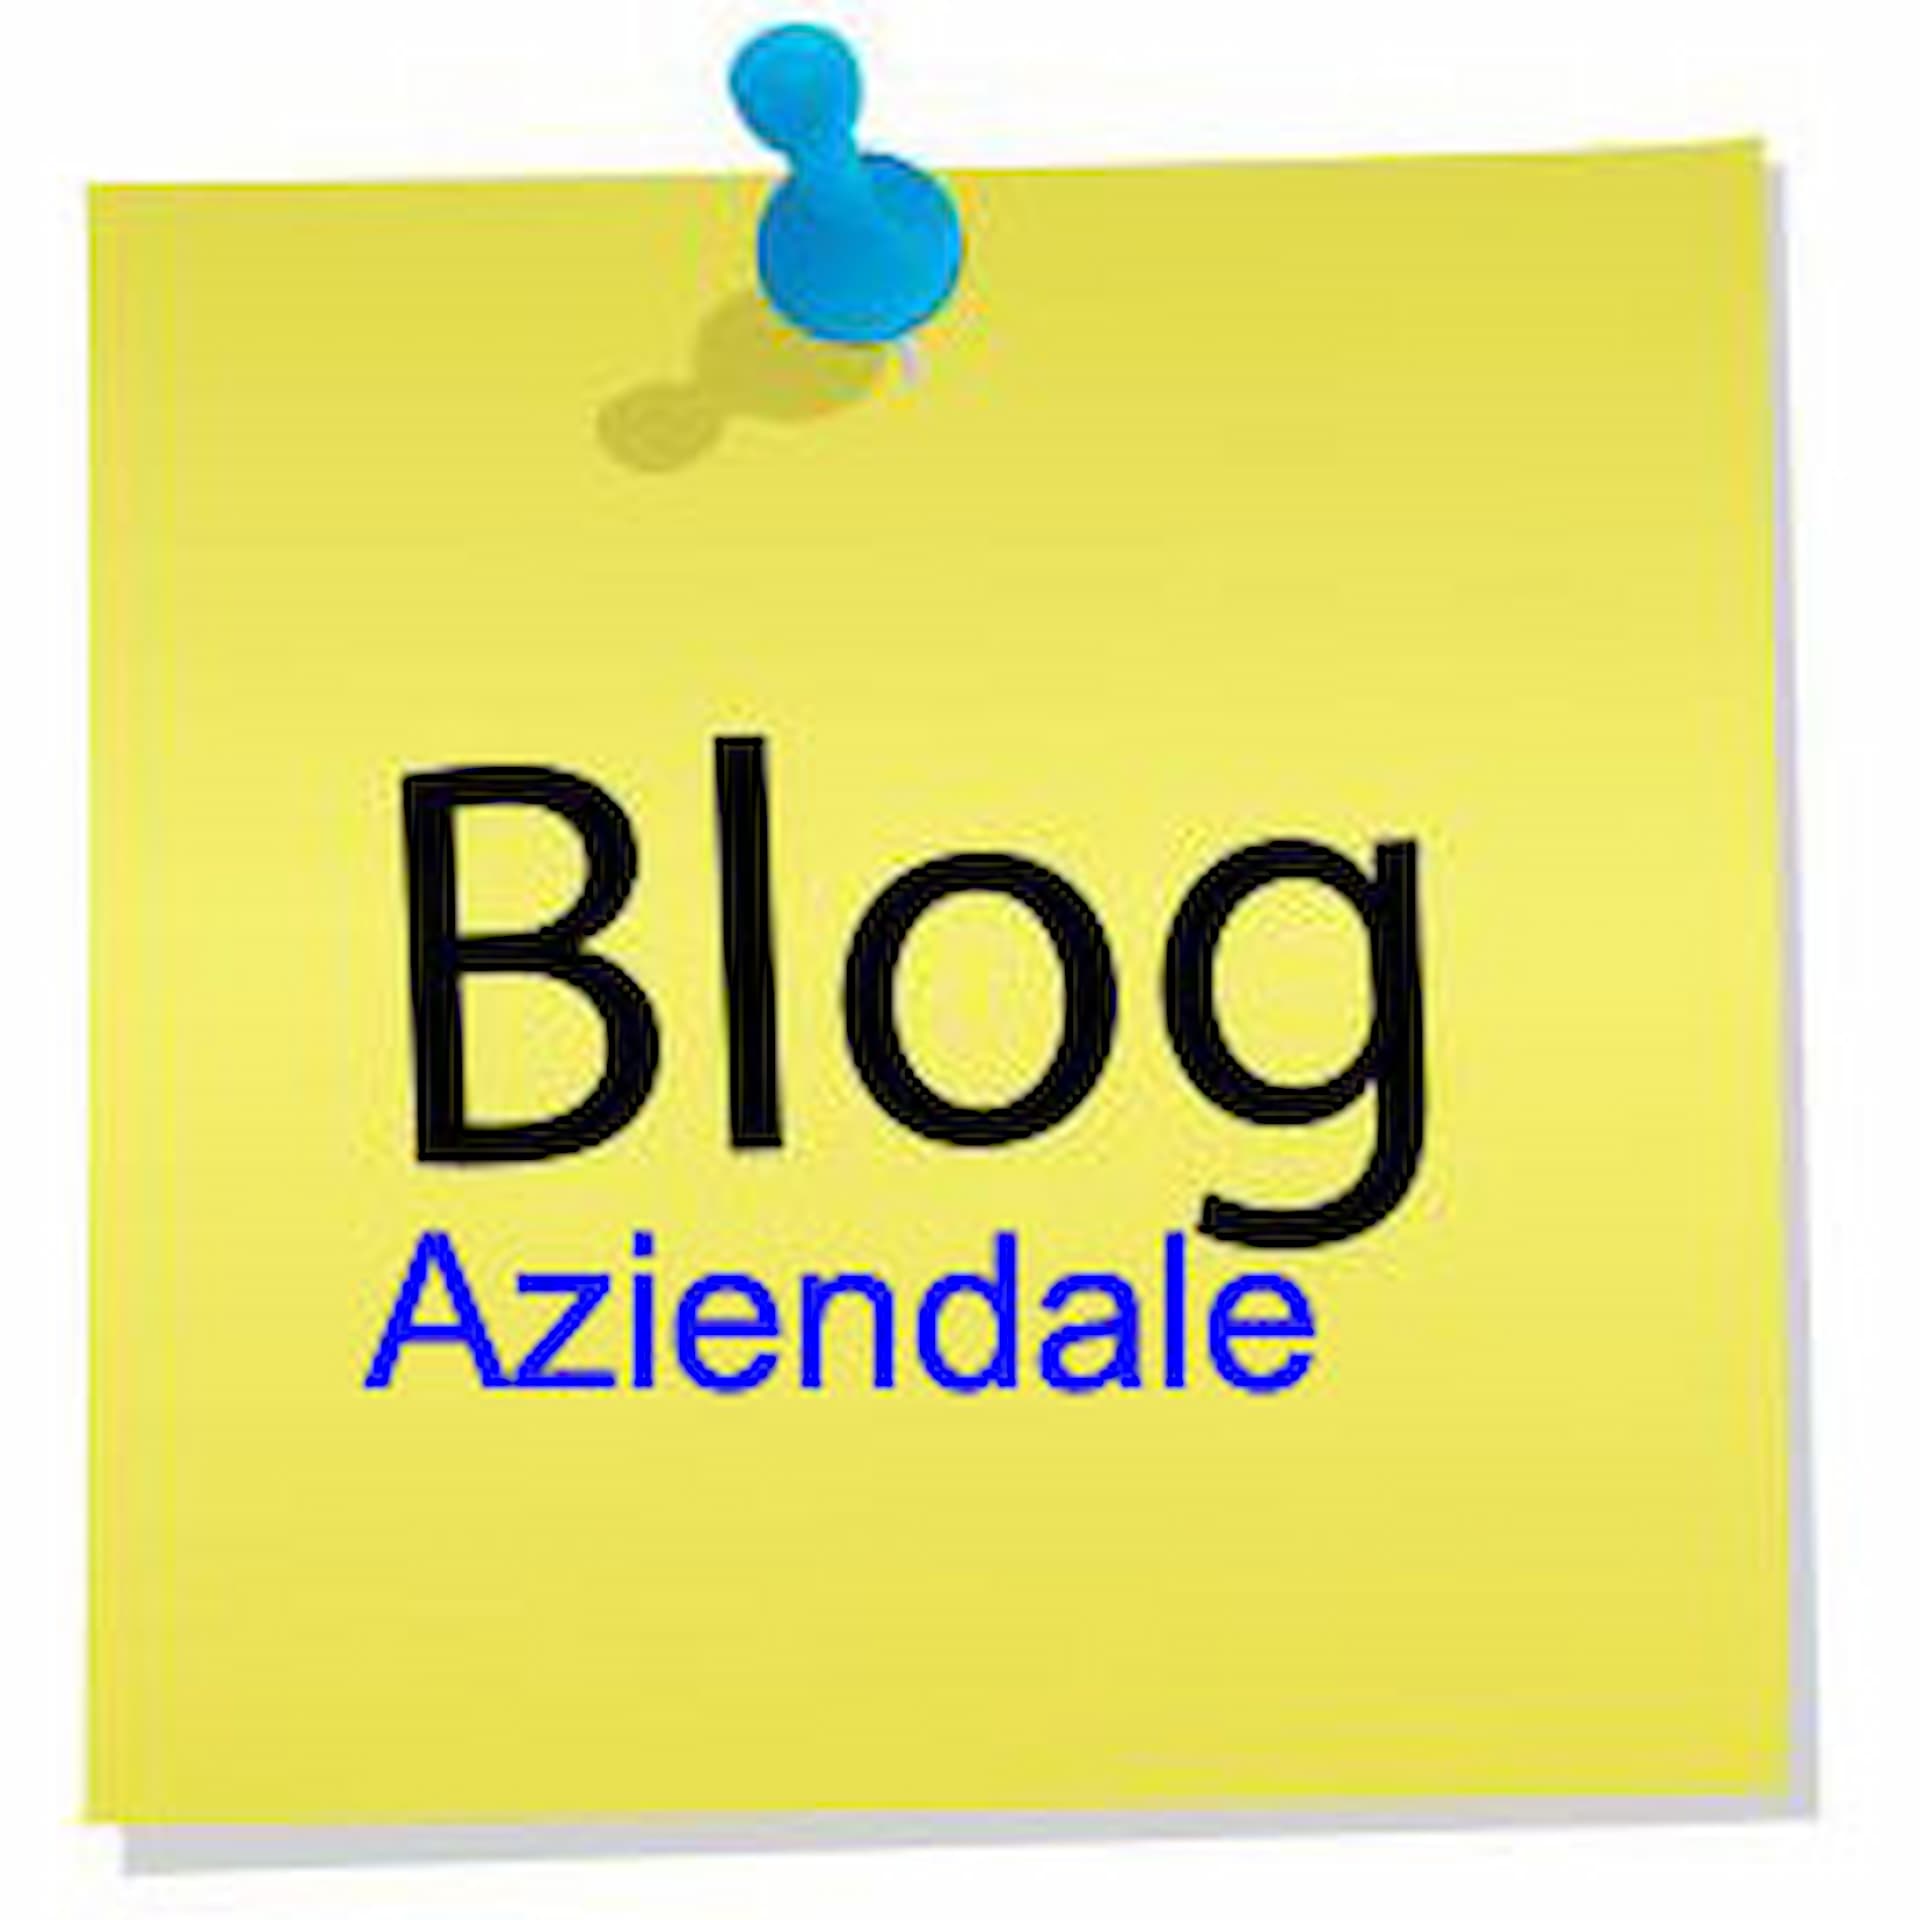 L'Importanza dei Blog Aziendali